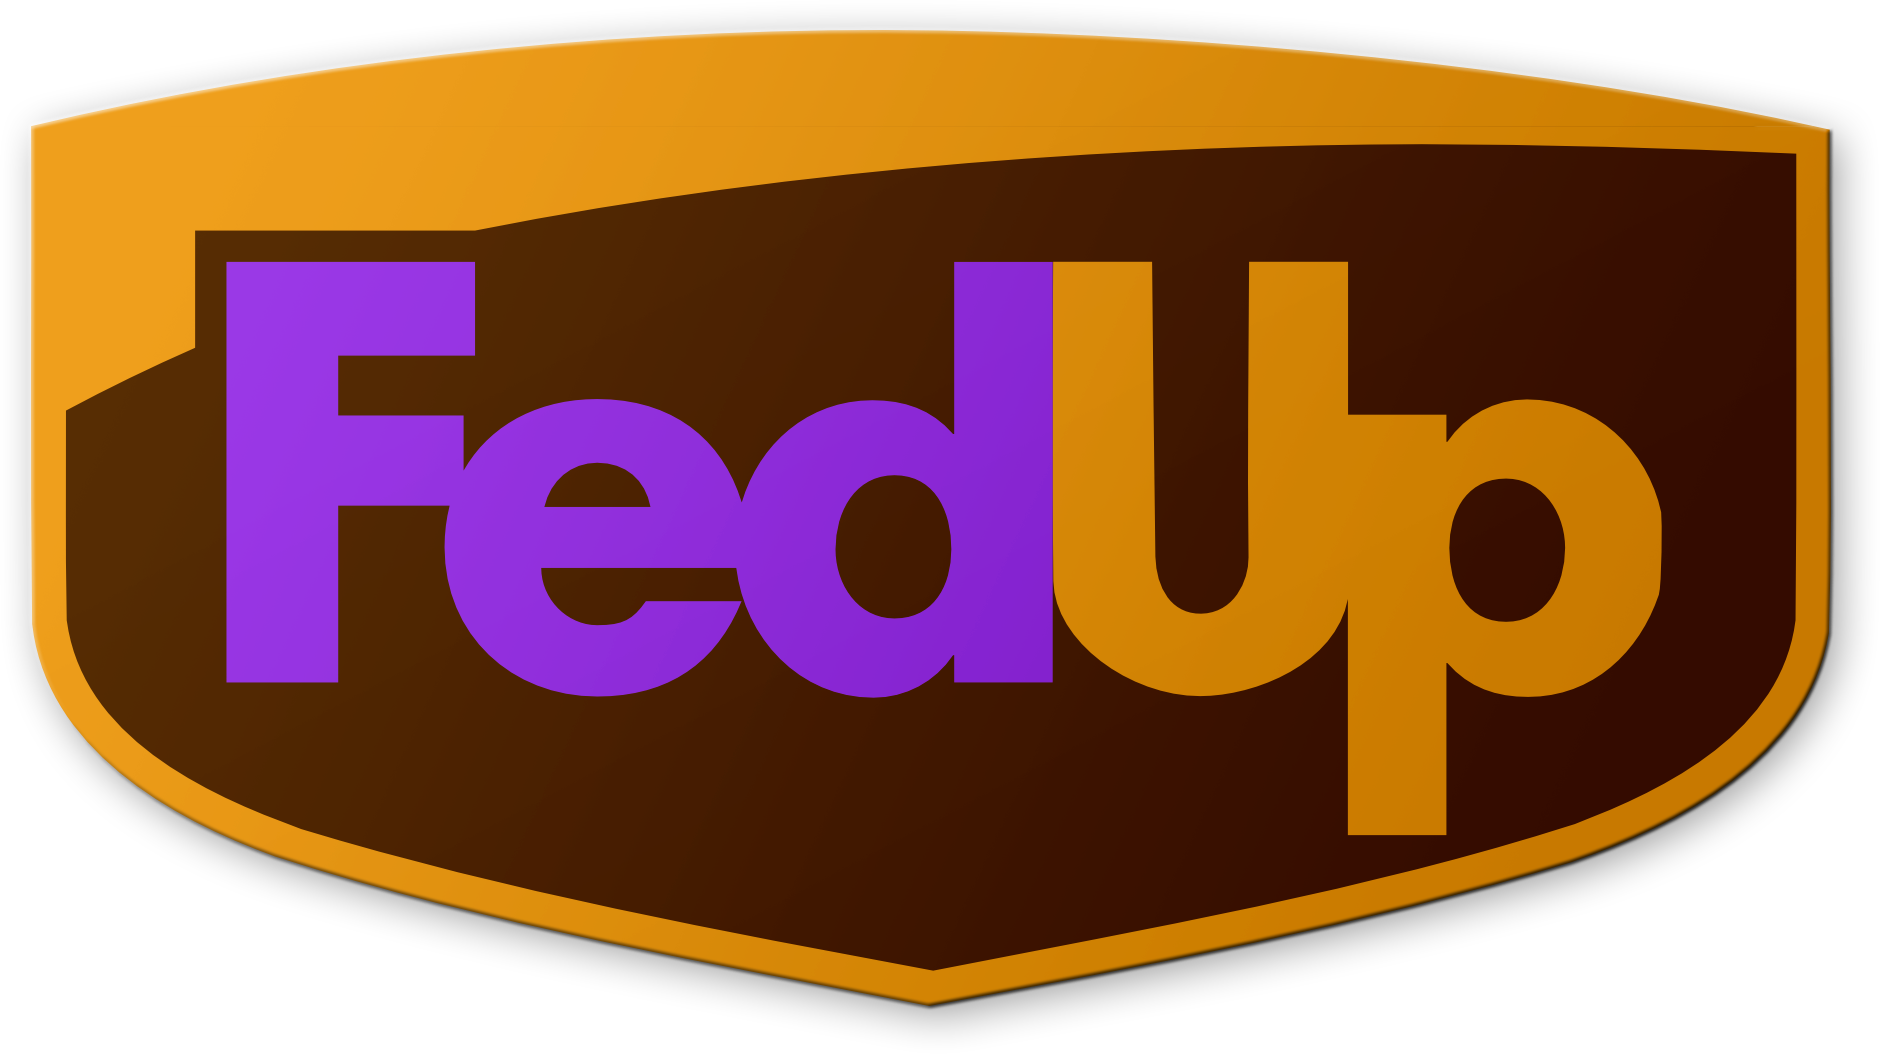 Fedup Logo - Fedex And Ups Fedup (1880x1054)